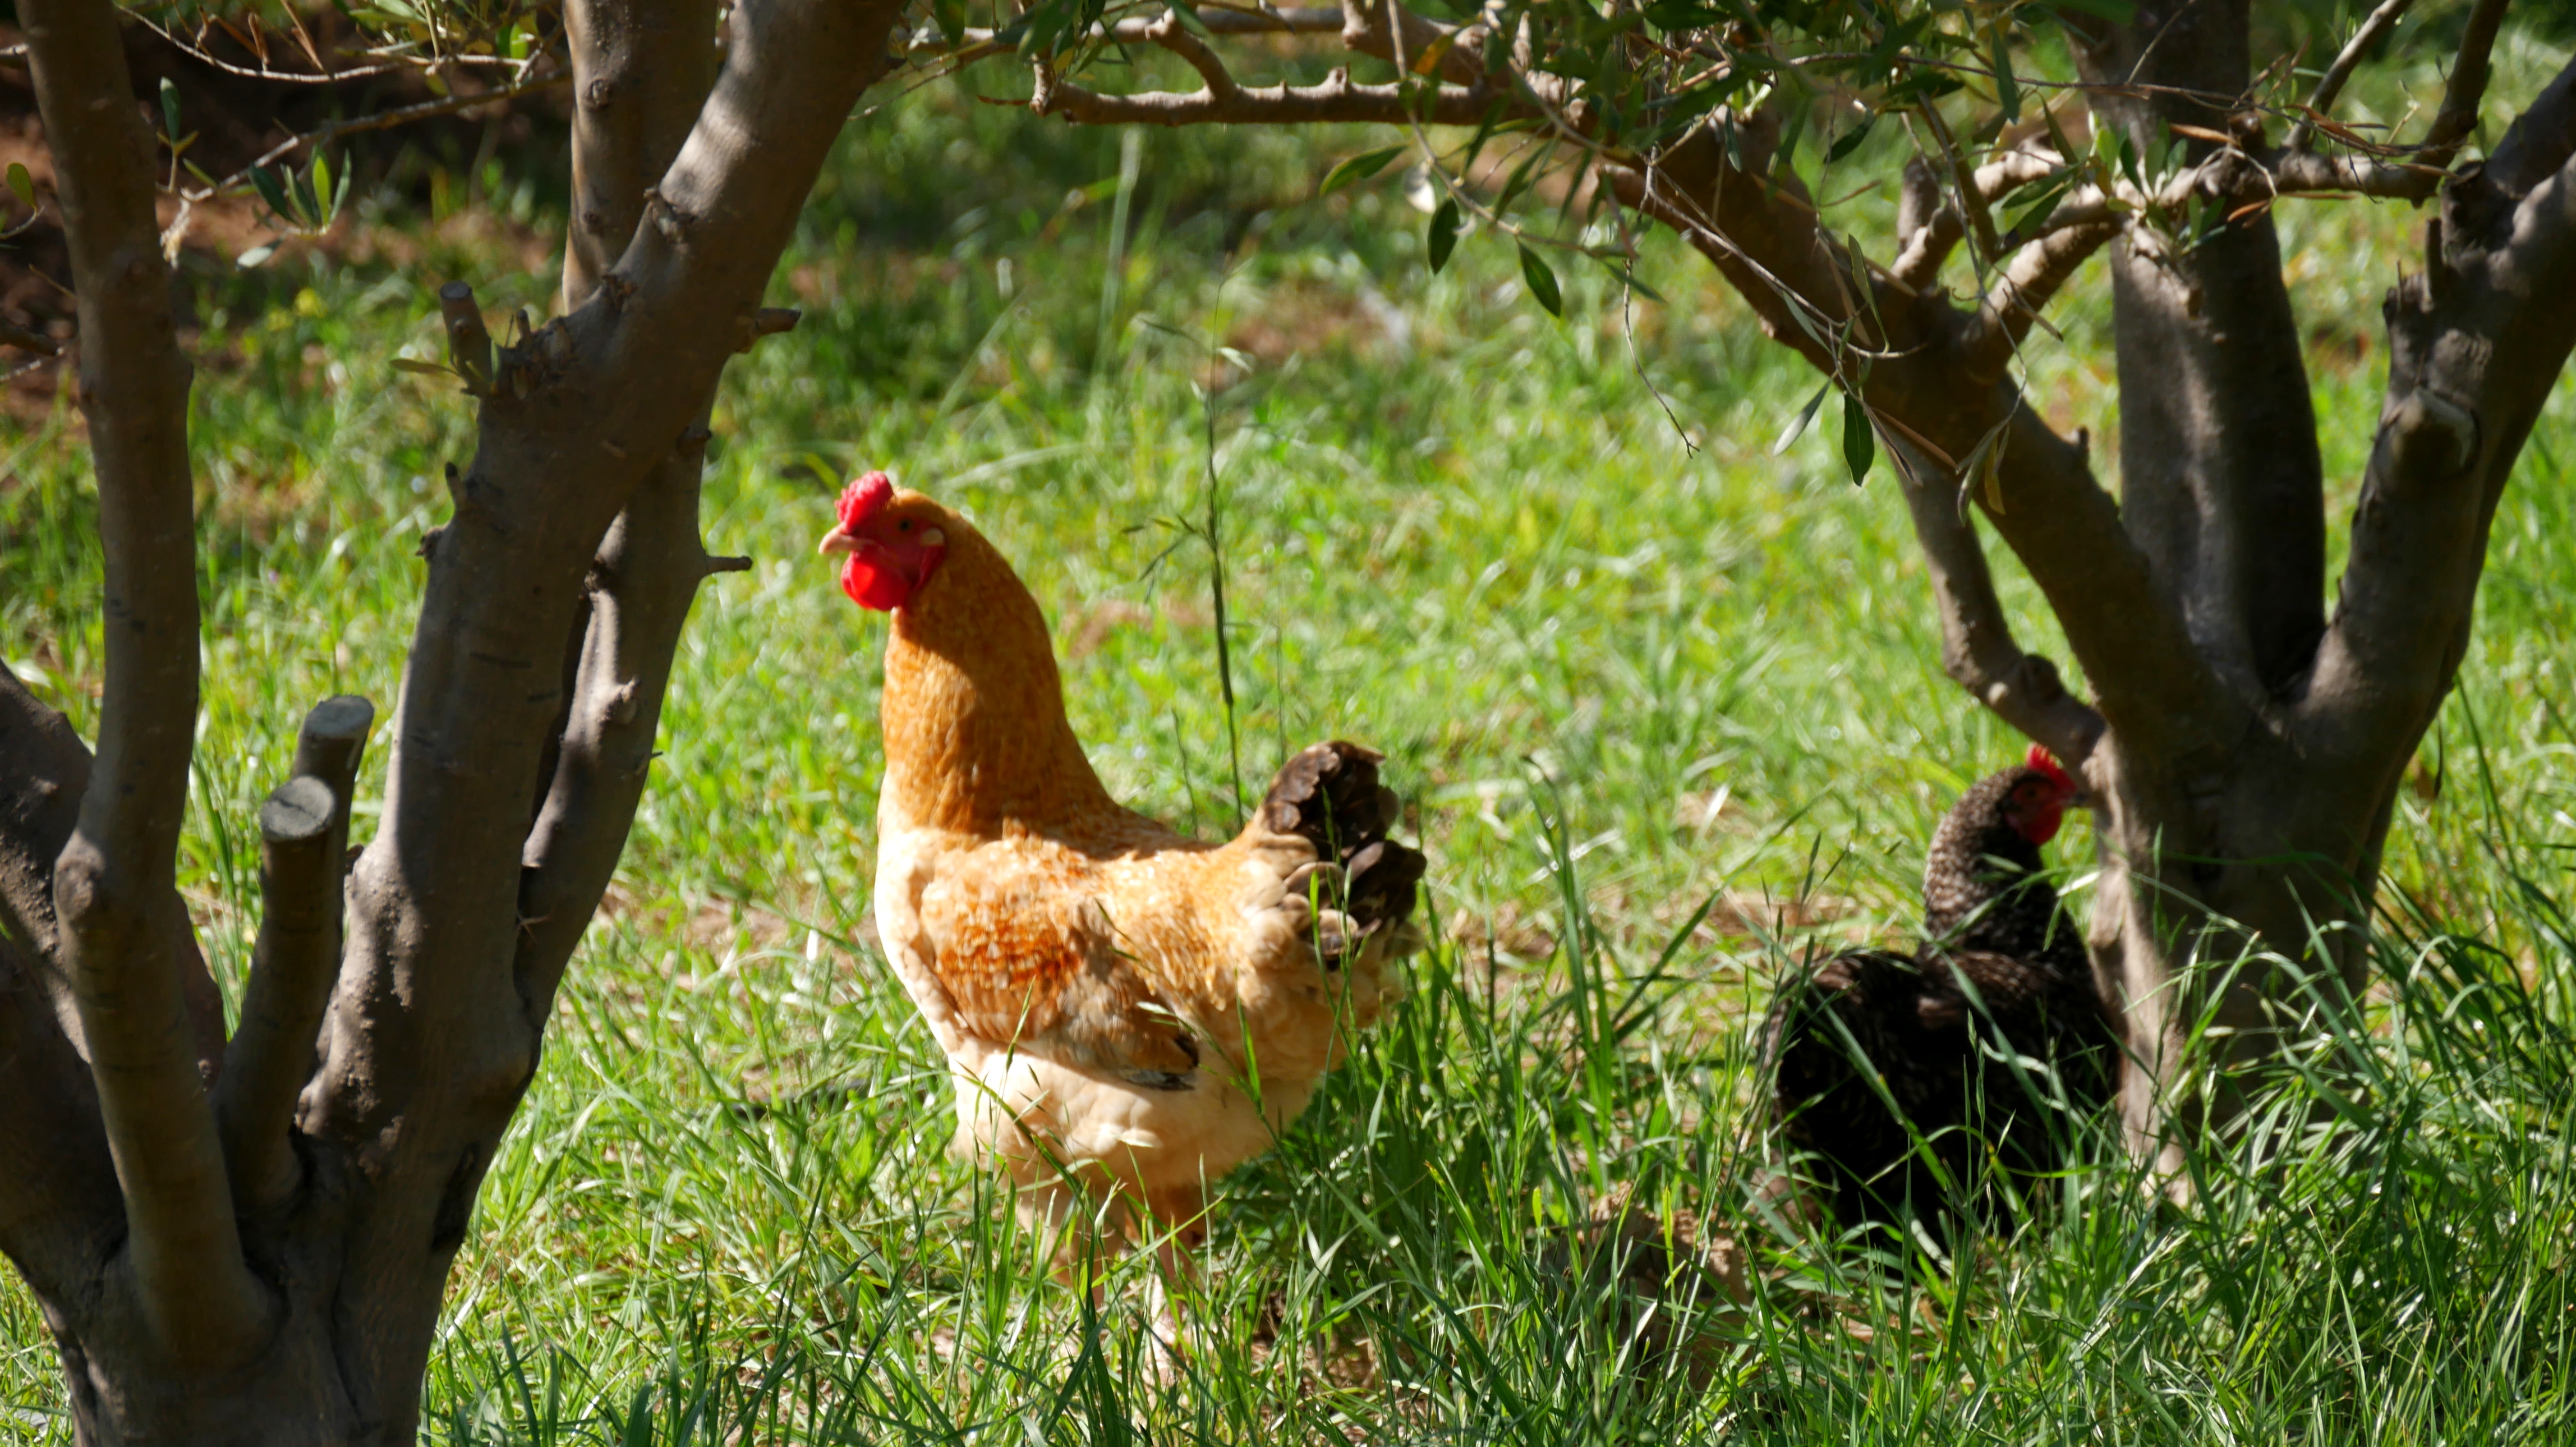 Olive Stone Farm Montagu chicken